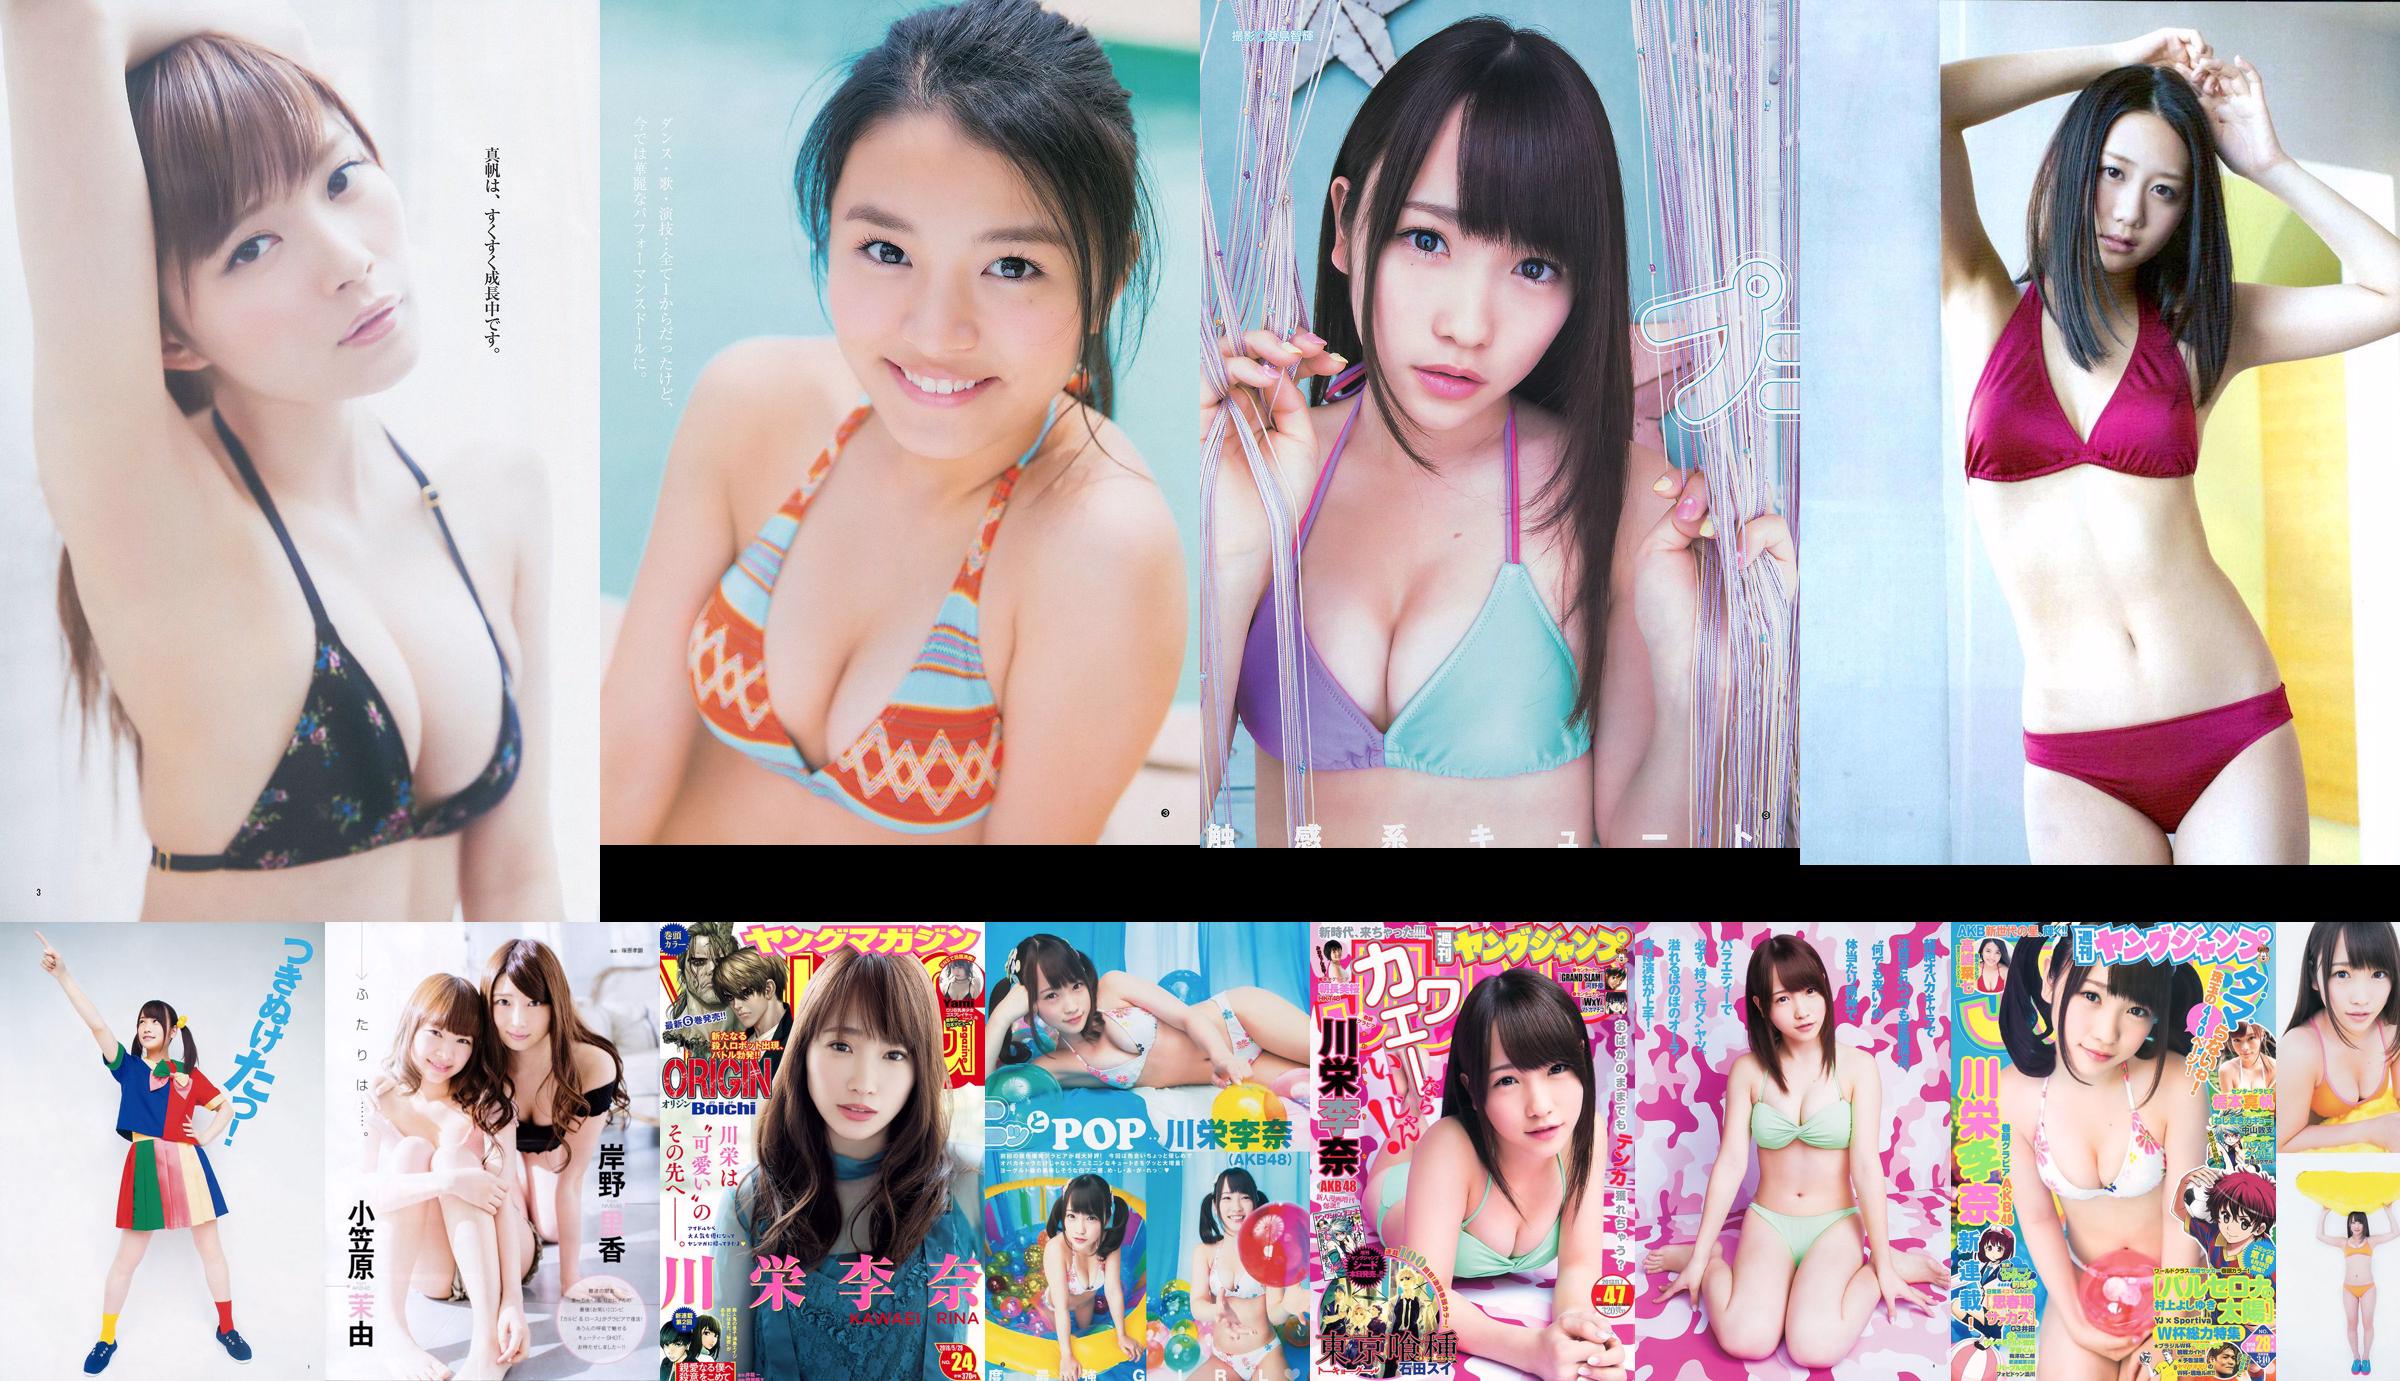 Rina Kawaei Mio Tomonaga [Weekly Young Jump] 2013 No.47 Photo Magazine No.53c79c Pagina 1